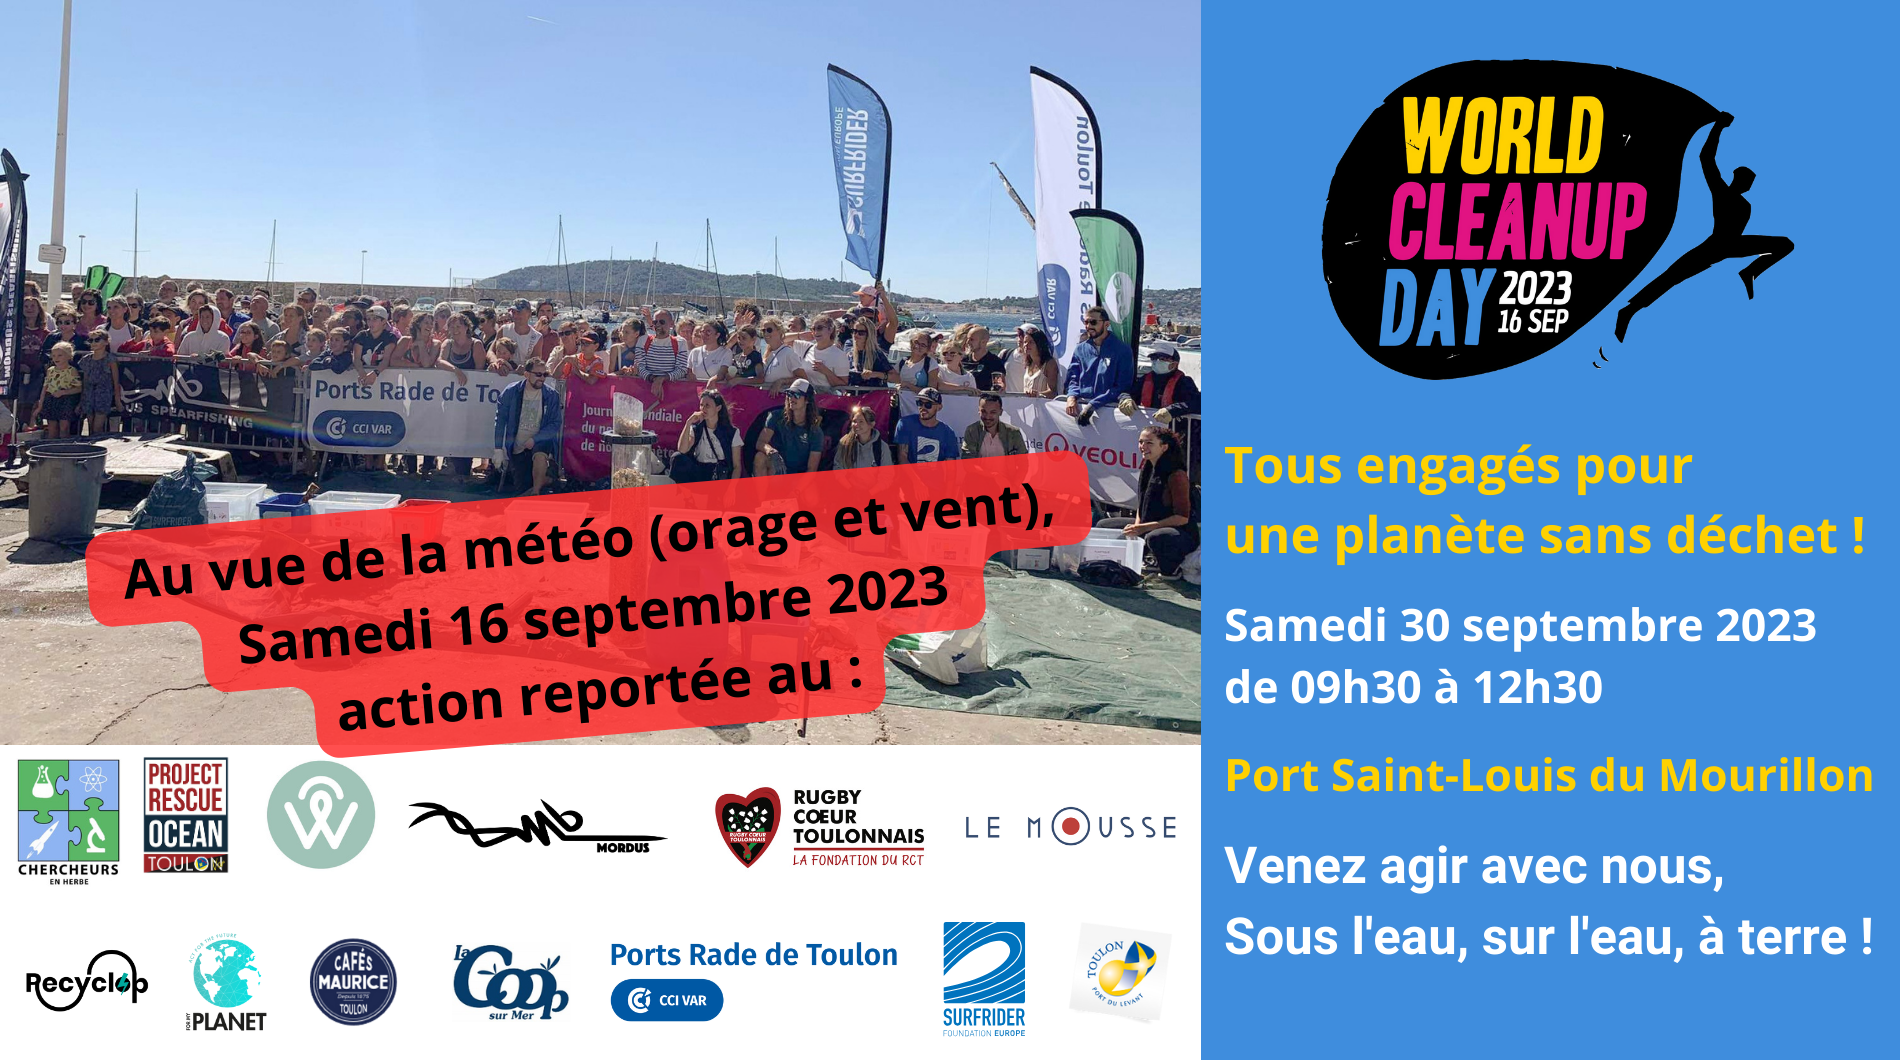 Collecte World Clean Up day - Dans l'eau, sur l'eau, à terre - Port St-Louis du Mourillon - Toulon